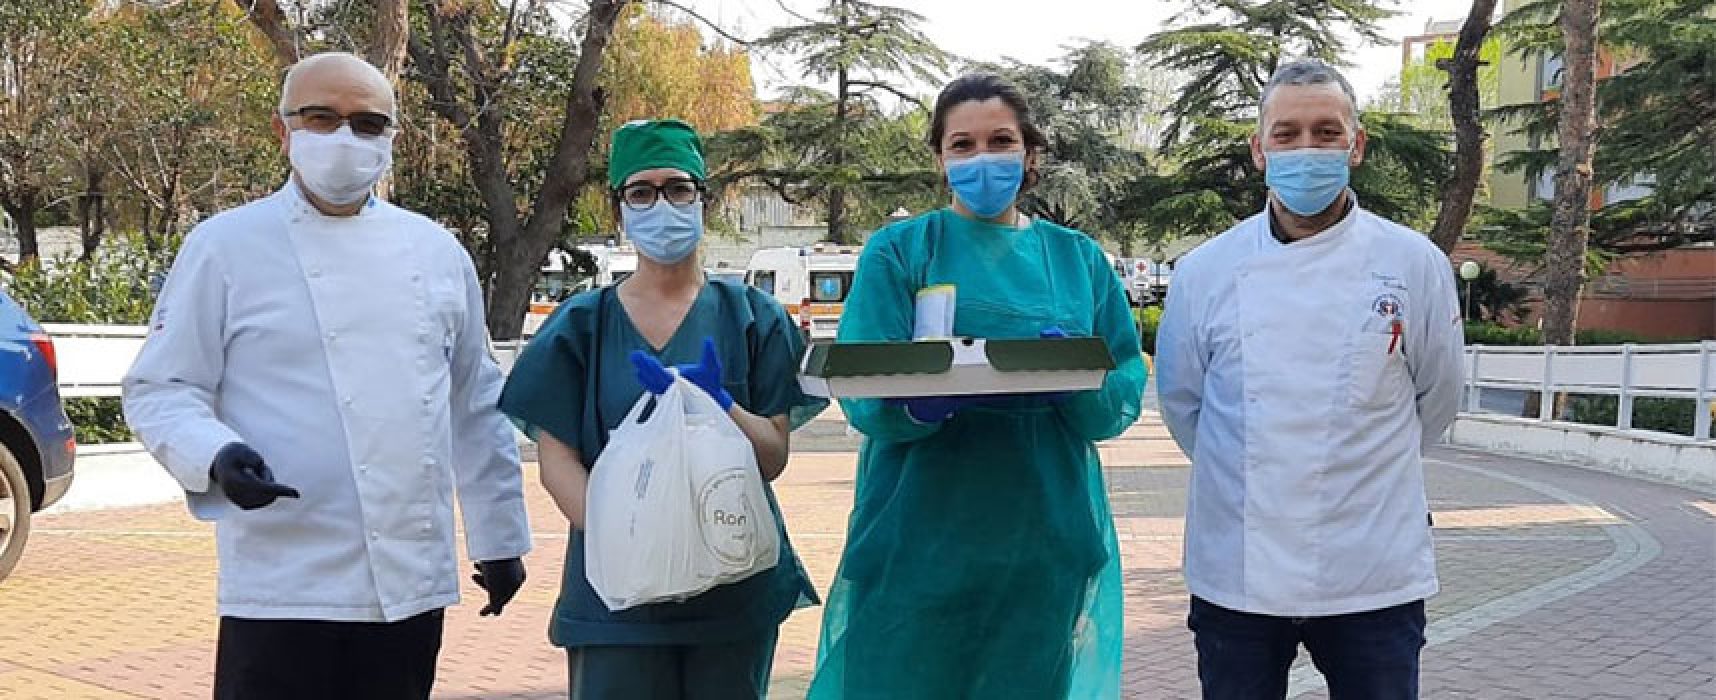 Associazione cuochi e pasticceri Bat offre colazioni a operatori ospedale Bisceglie / FOTO